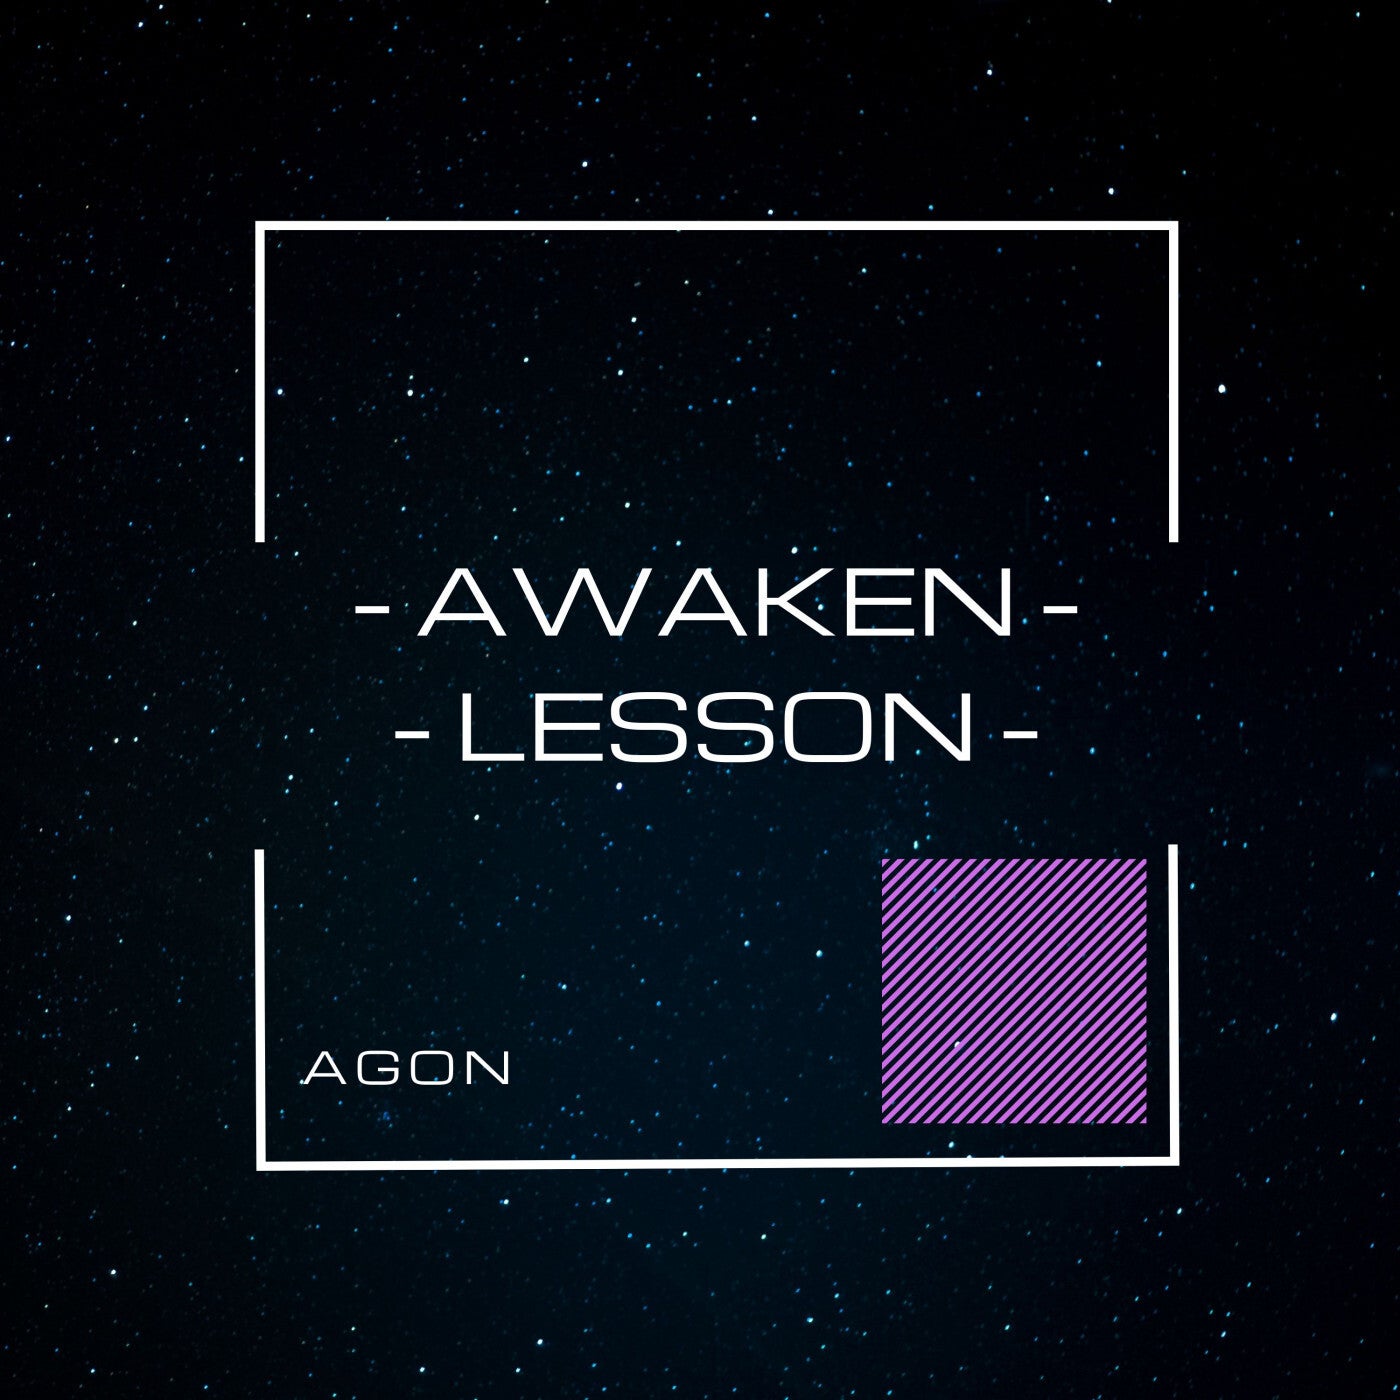 Awaken-Lesson